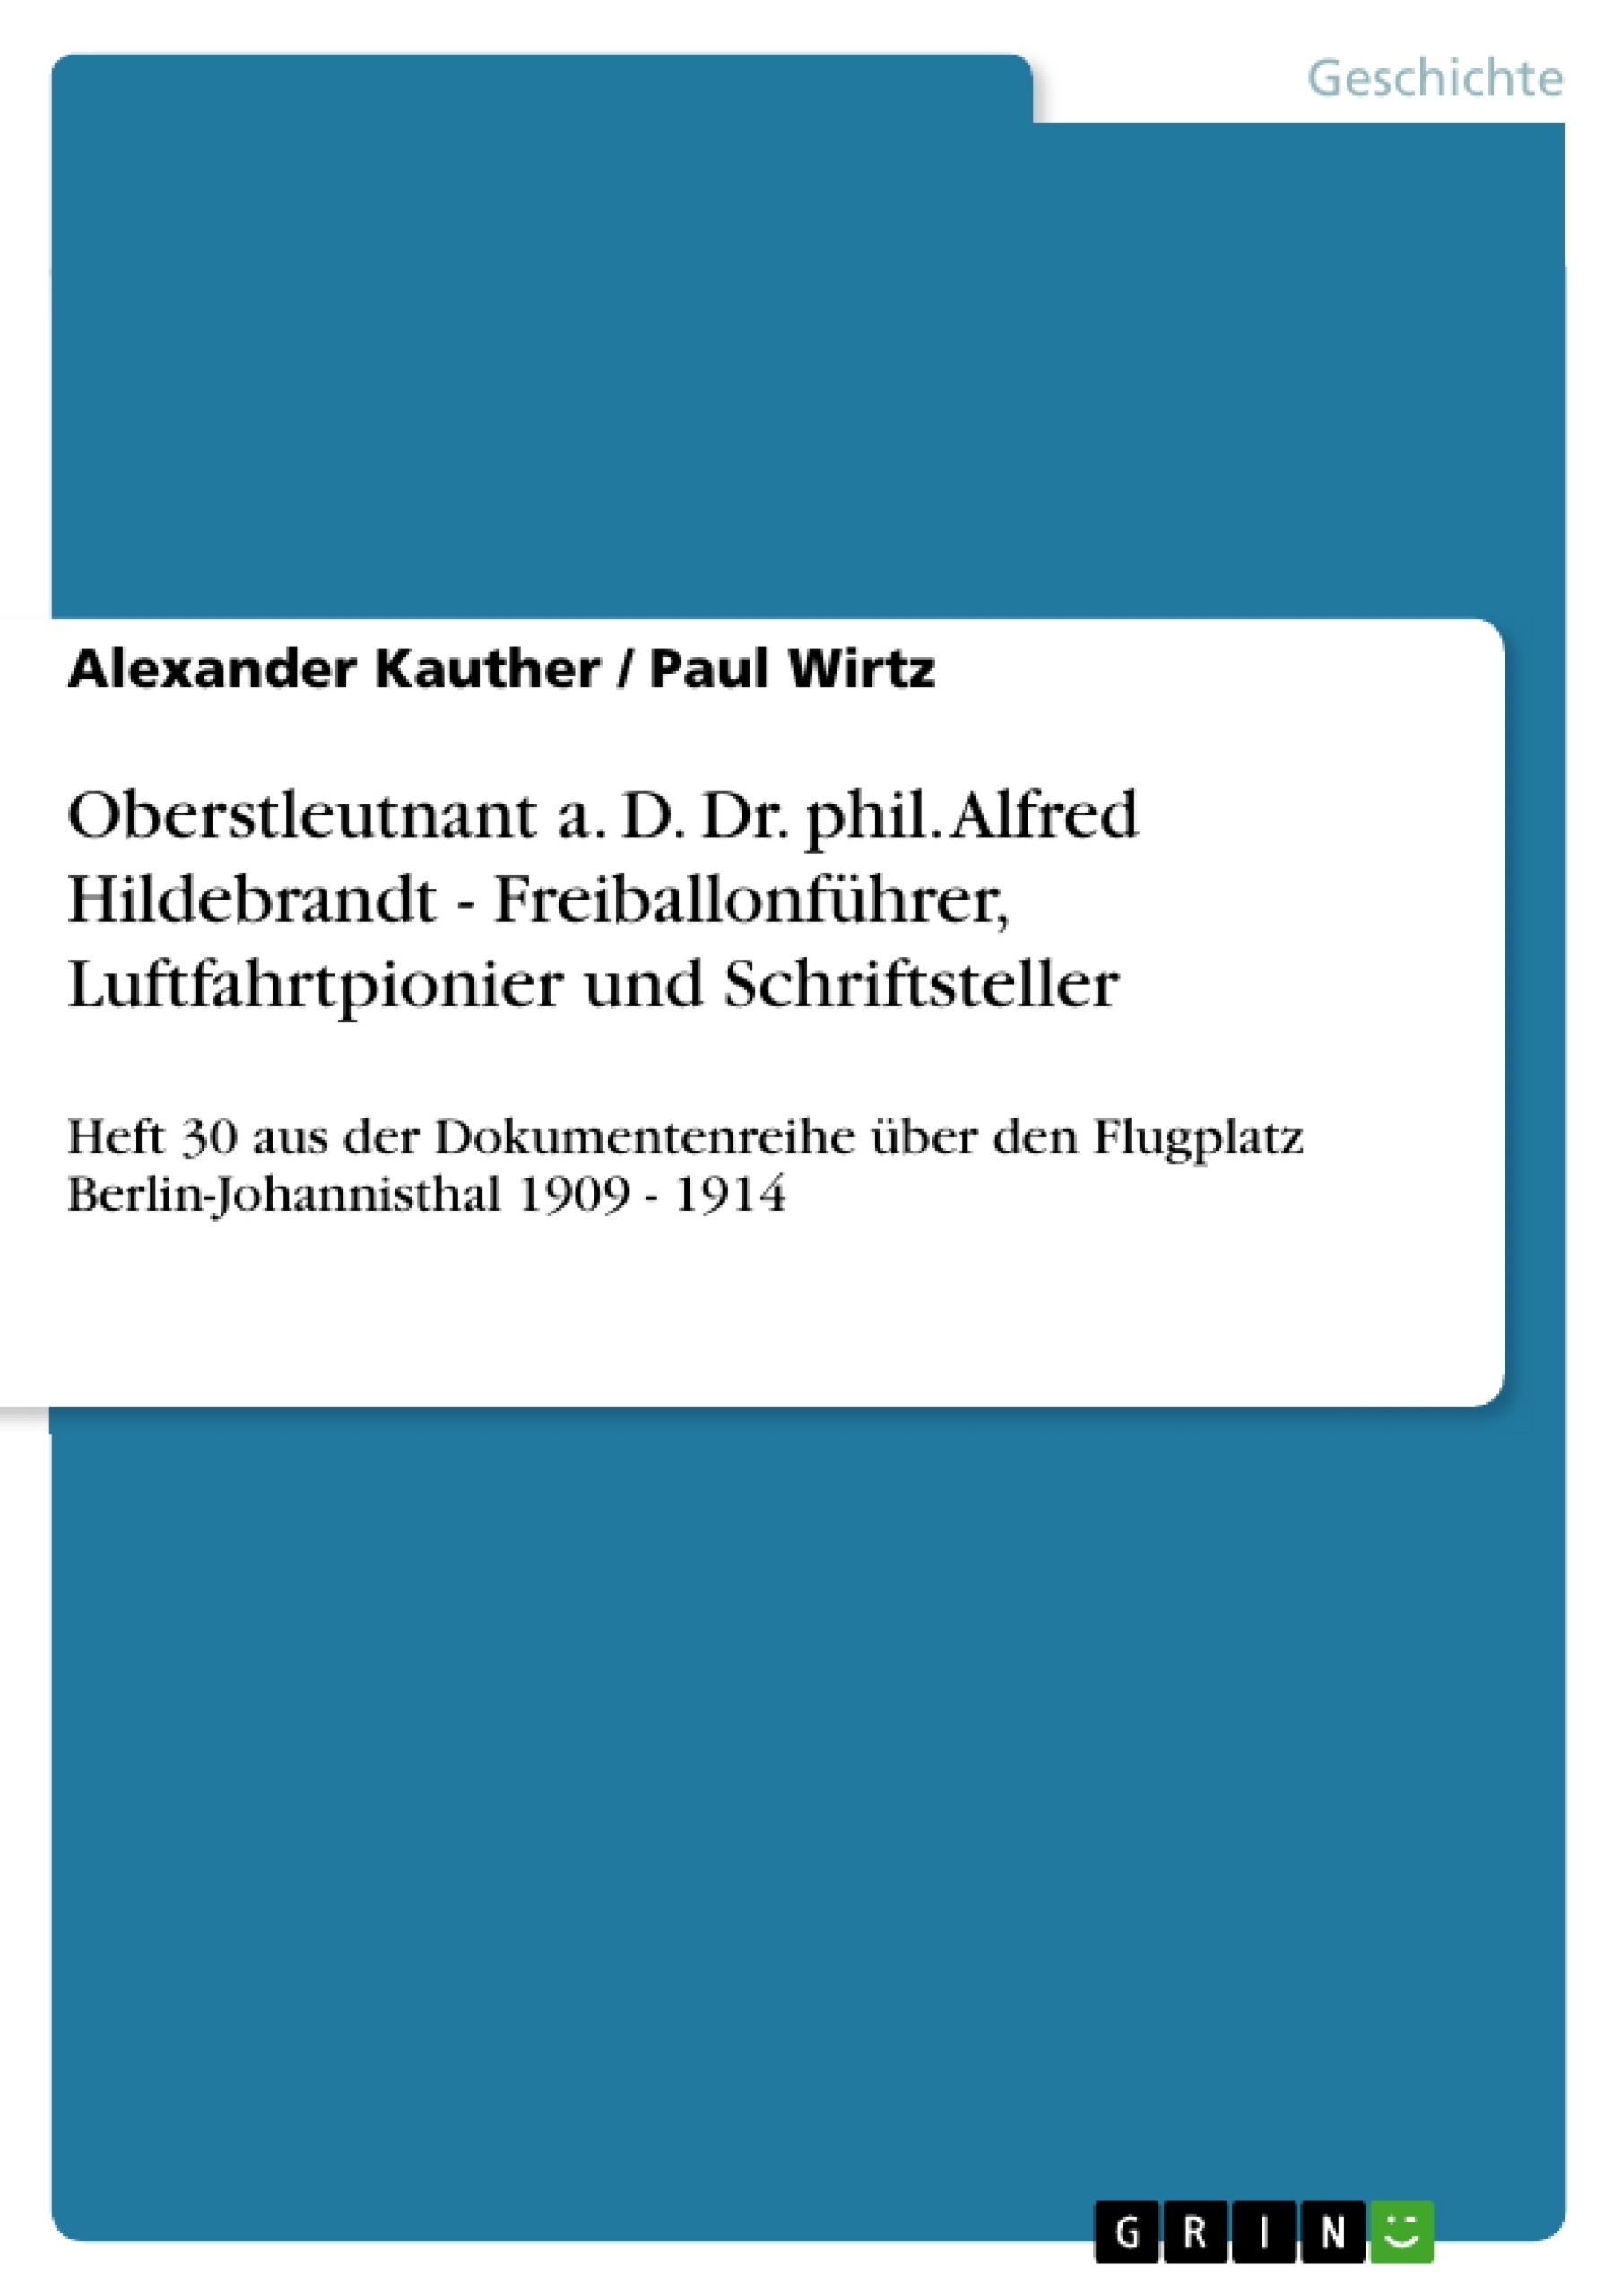 Title: Oberstleutnant a. D. Dr. phil. Alfred Hildebrandt - Freiballonführer, Luftfahrtpionier und Schriftsteller